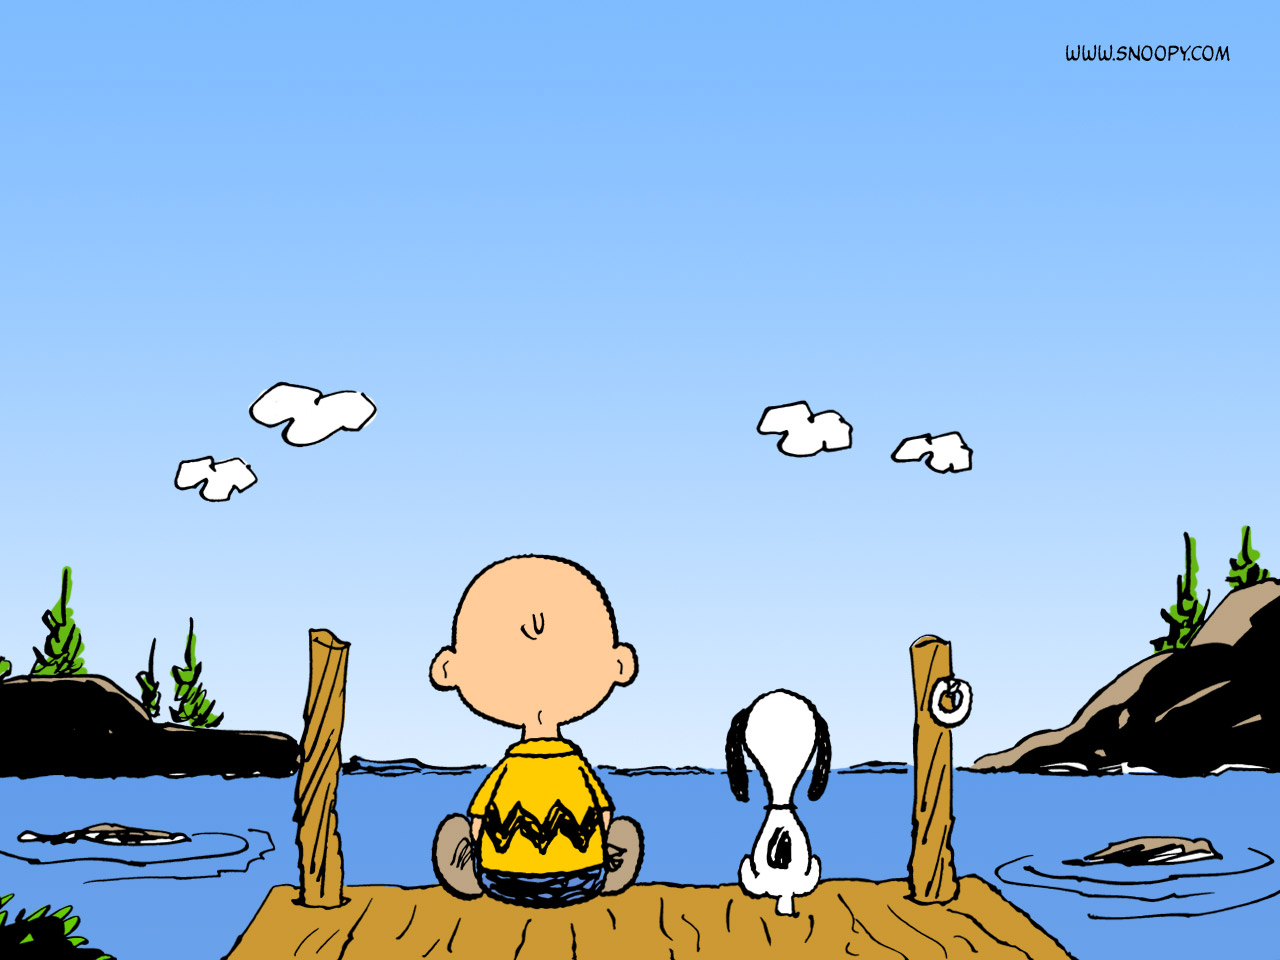 [Charlie_Brown.jpg]